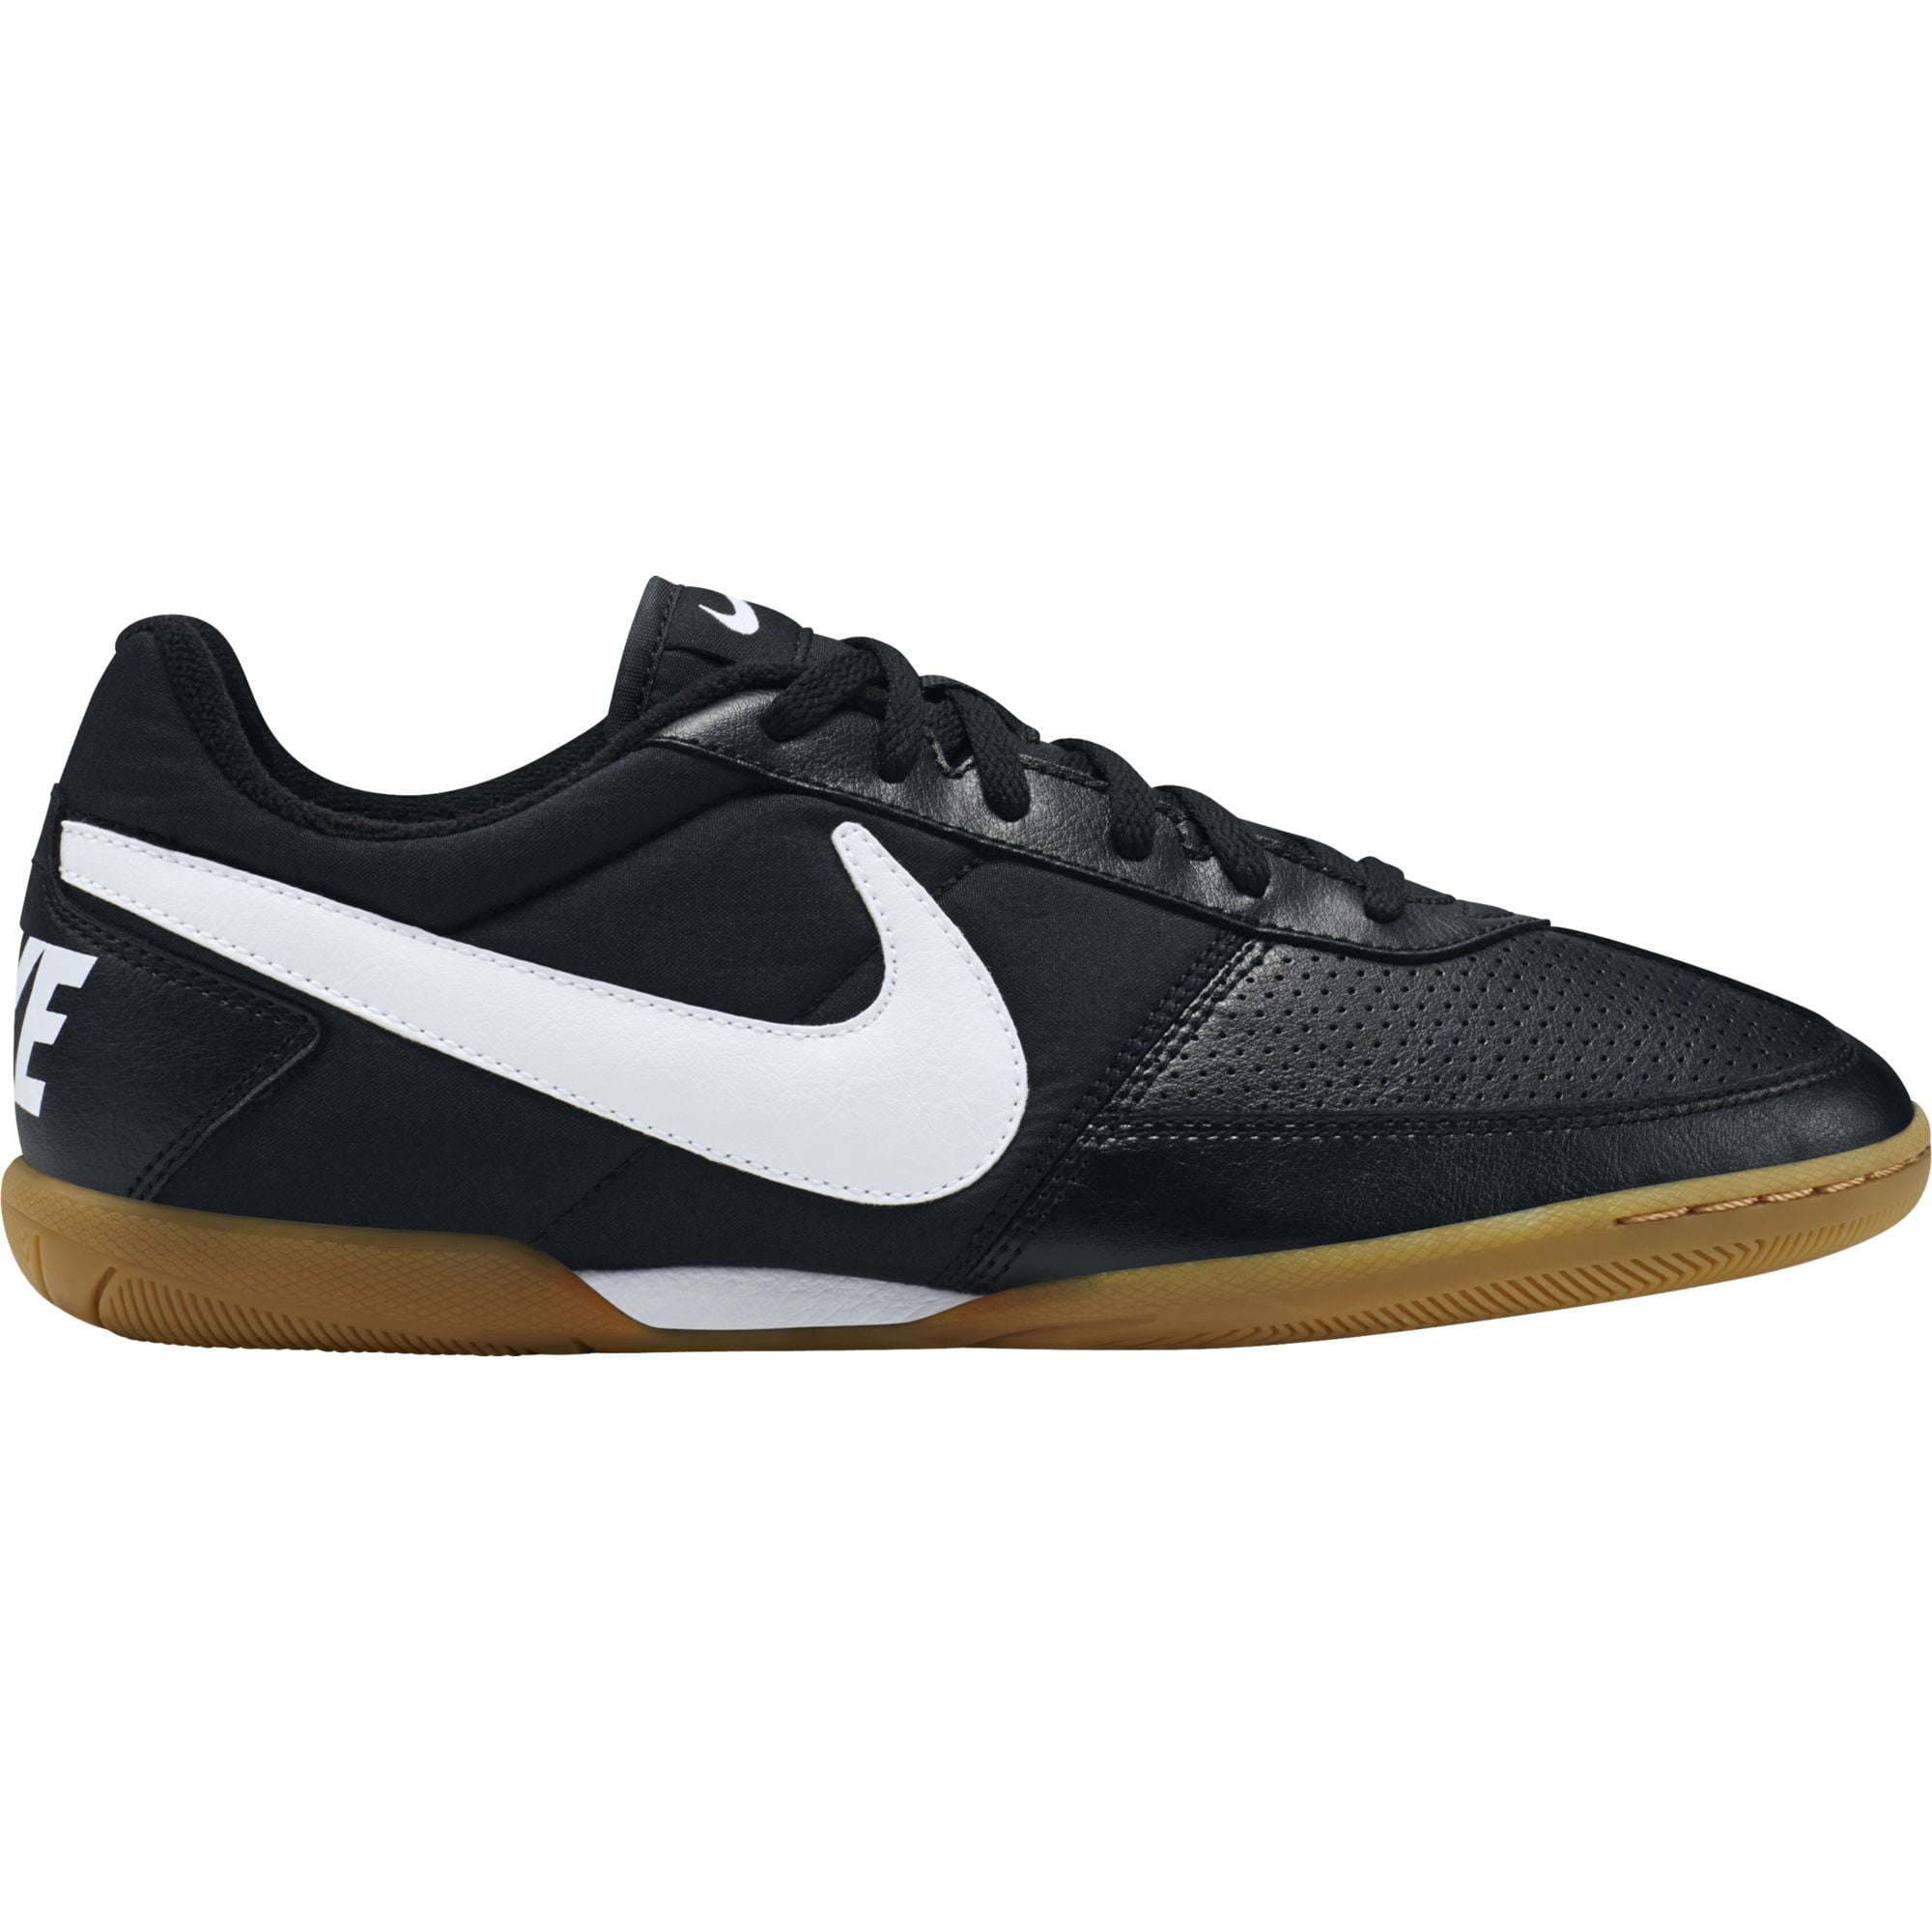 Nike Davinho Indoor Soccer Cleat Black 